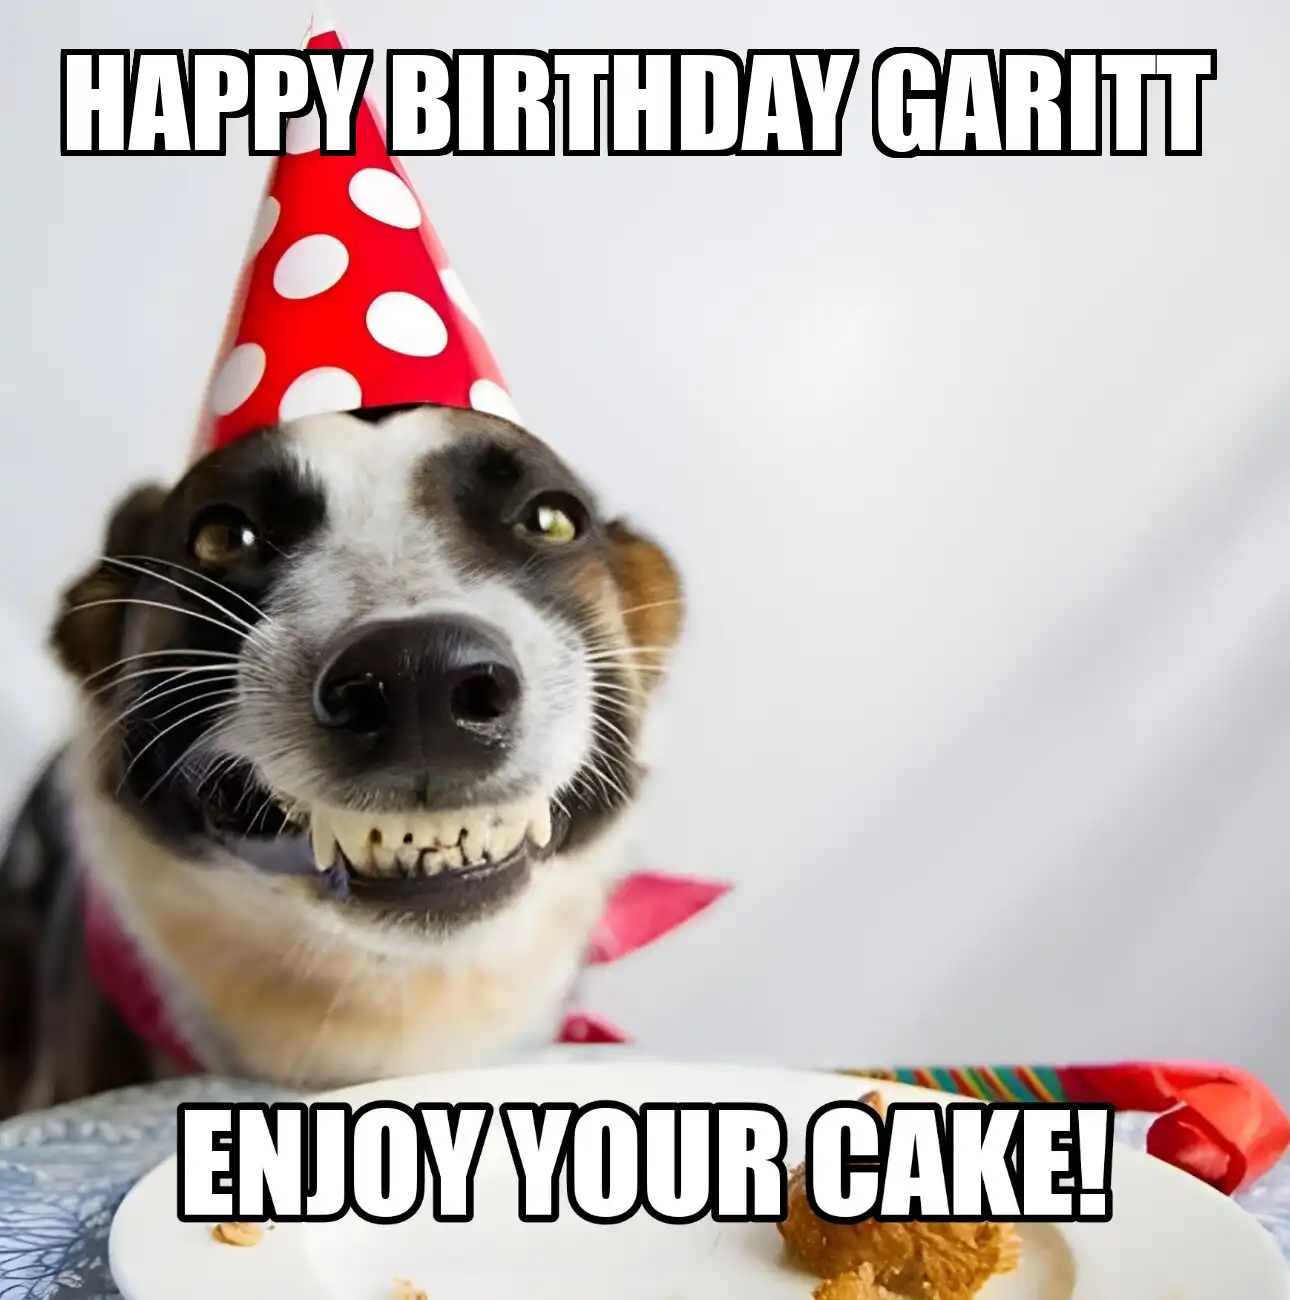 Happy Birthday Garitt Enjoy Your Cake Dog Meme